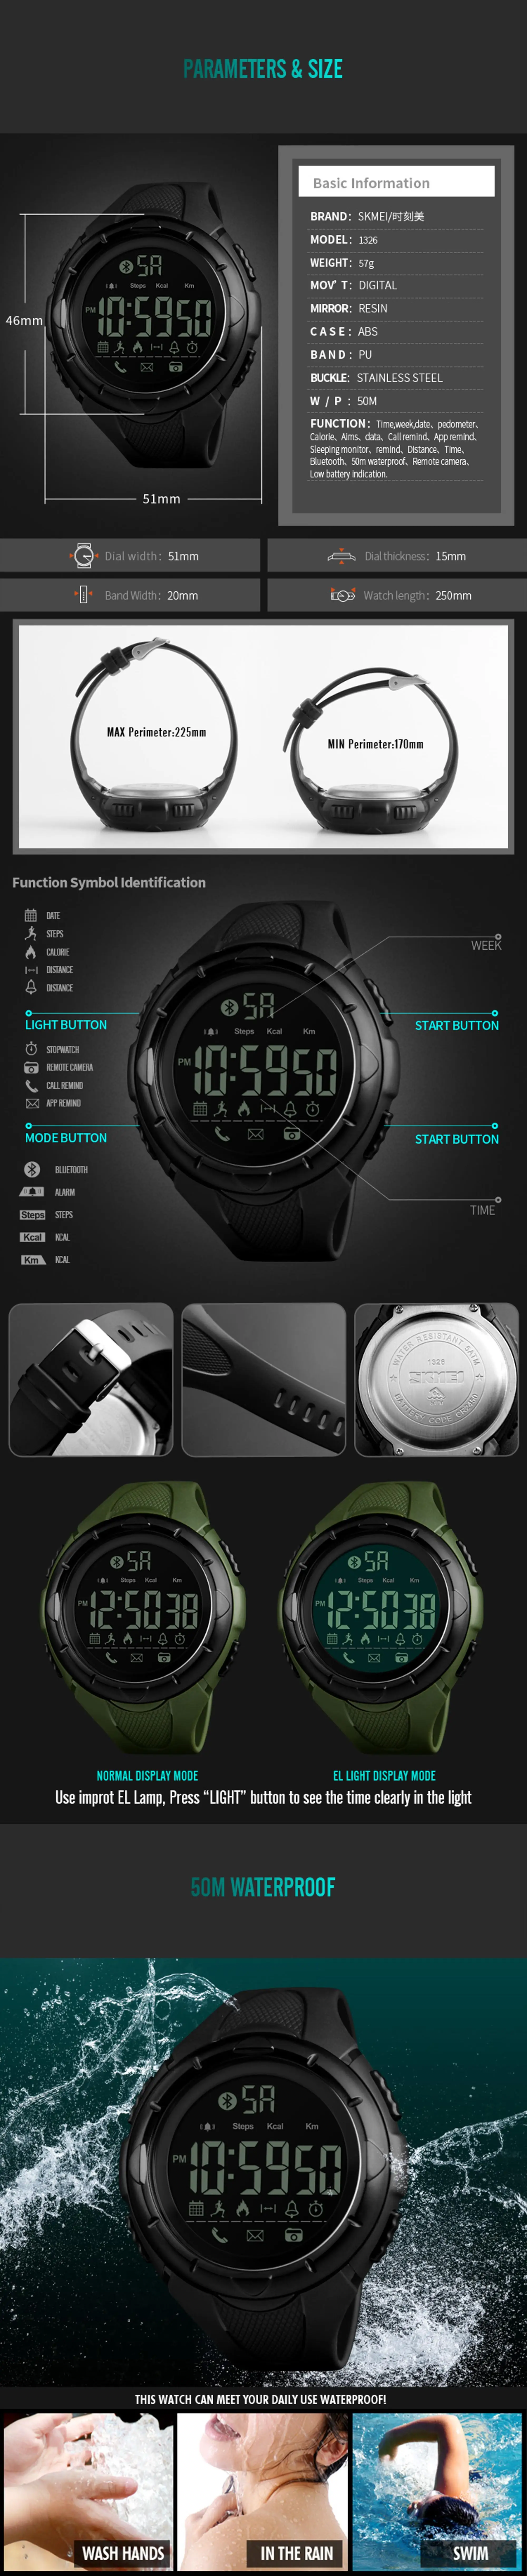 1326 smart watch3.jpg